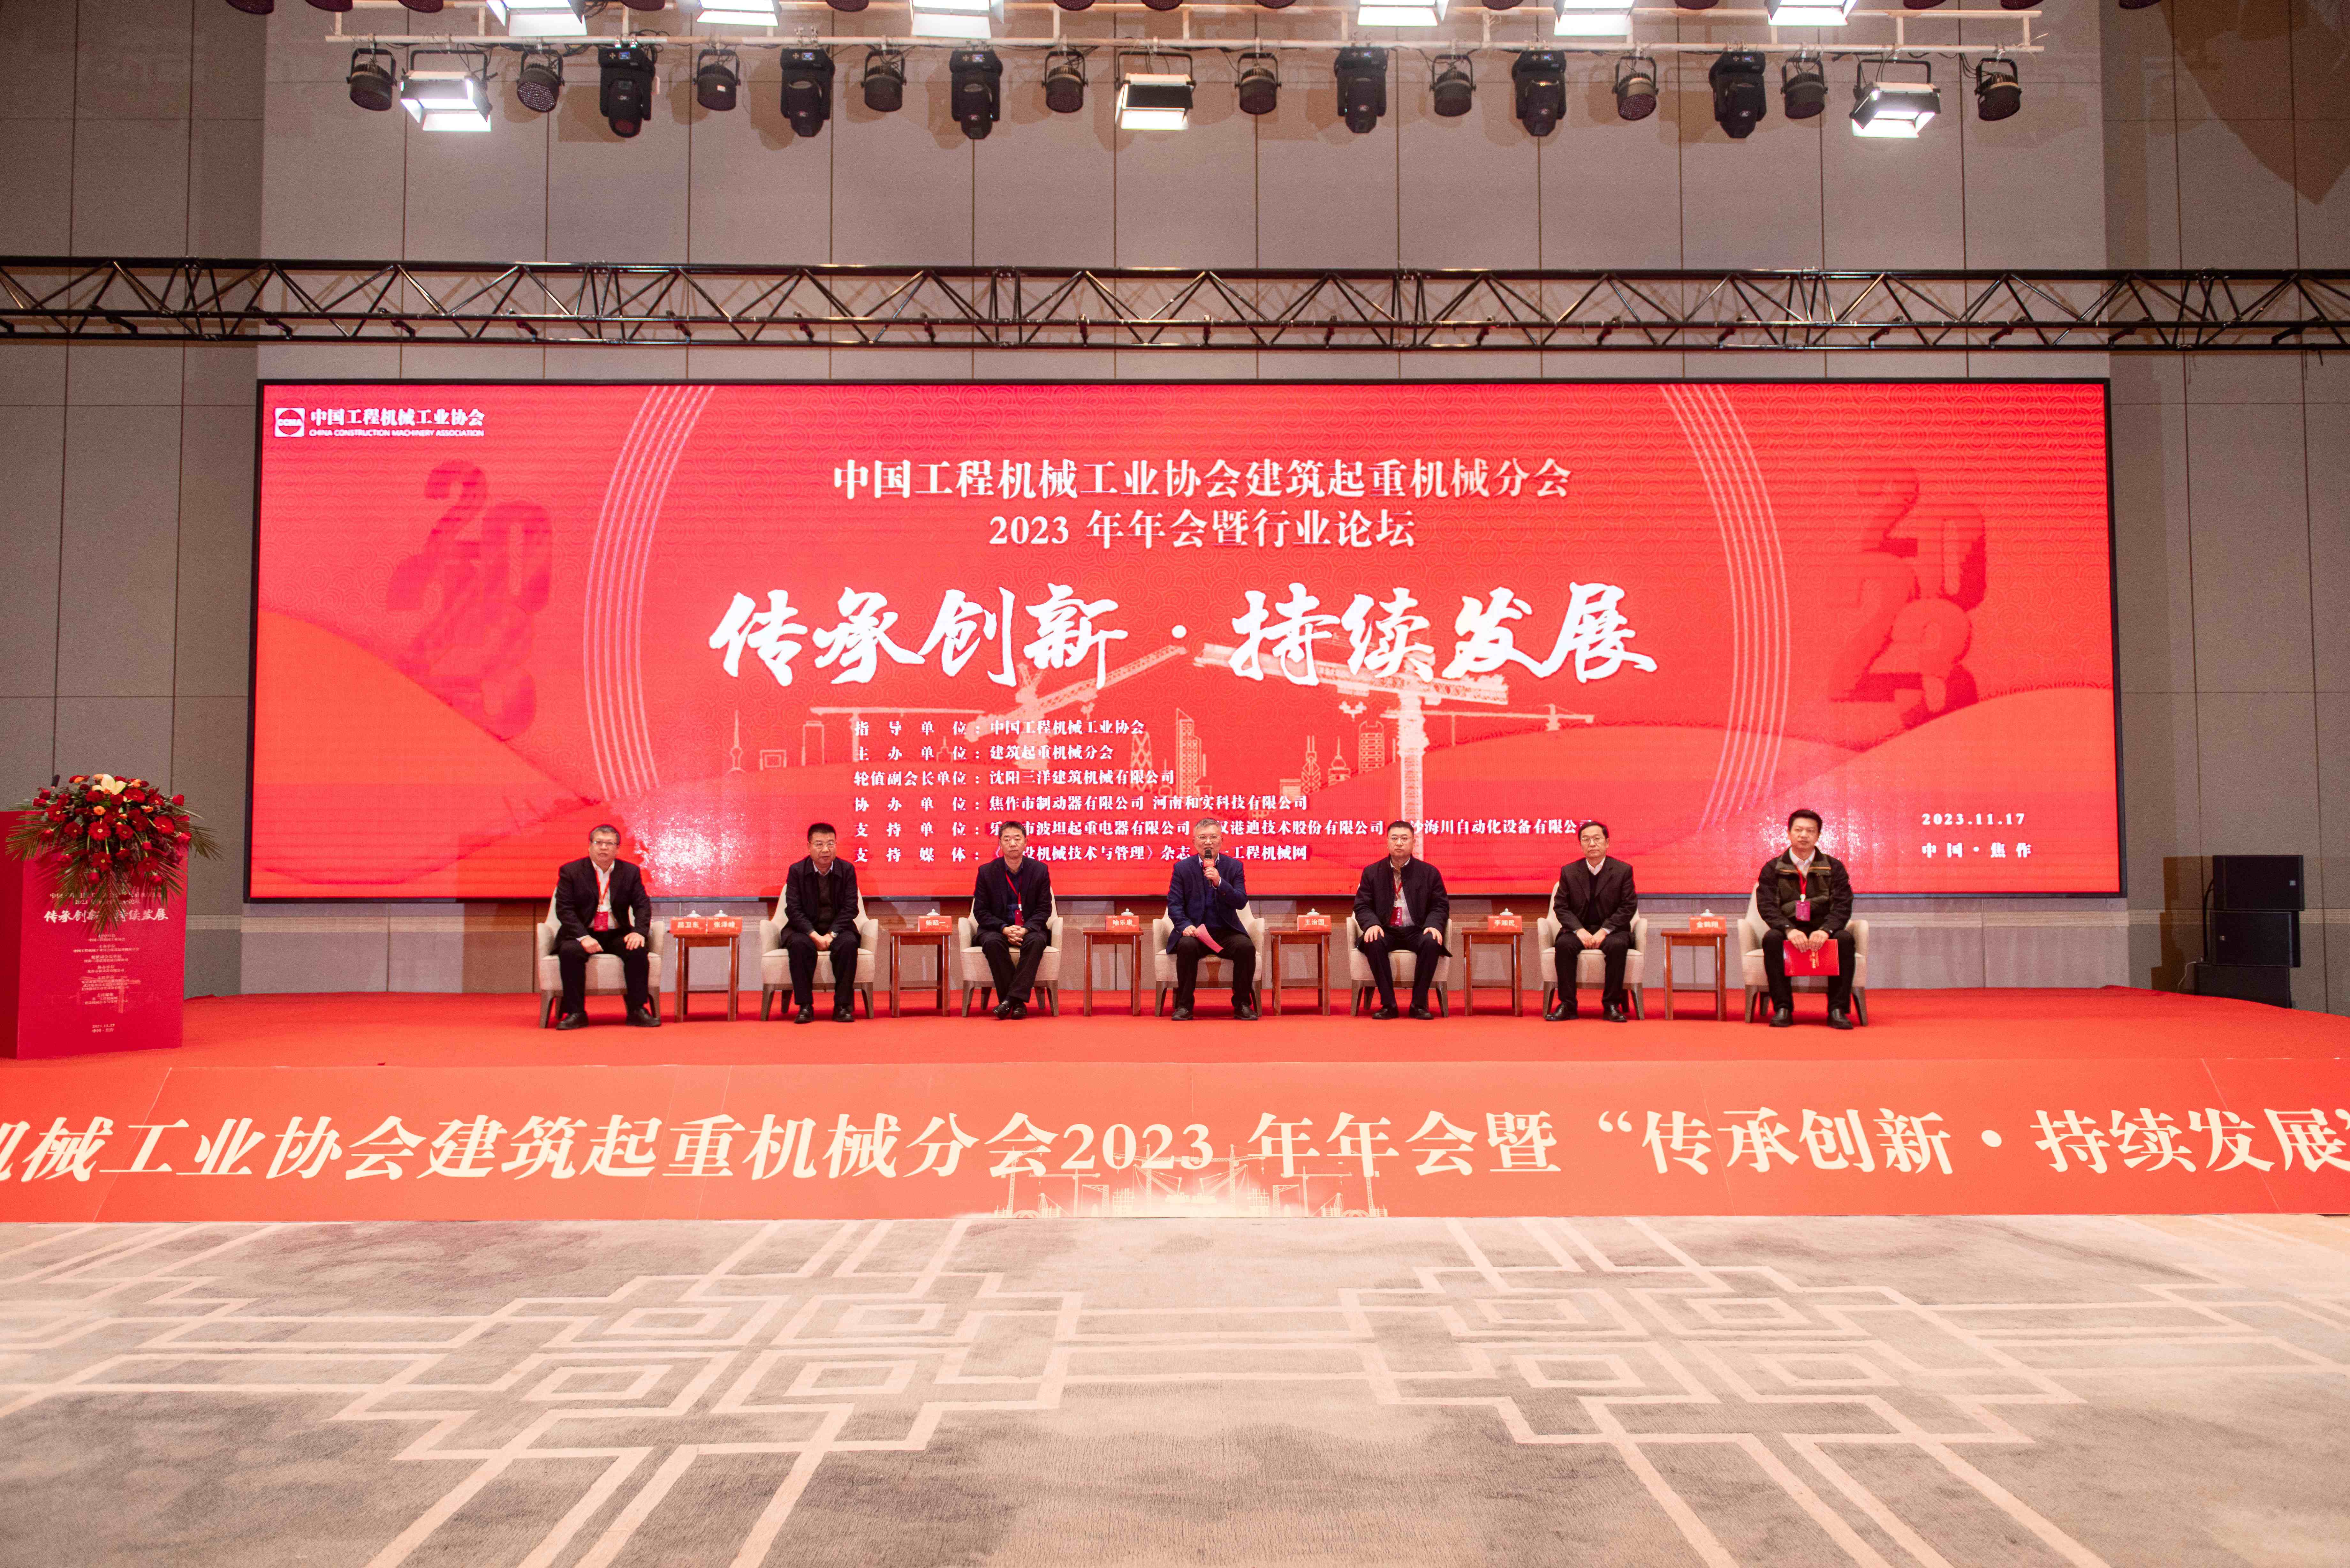 共创未来 公司受邀参加中国工程机械工业协会建筑起重机械分会2023年年会暨“创新传承•持续发展”行业论坛